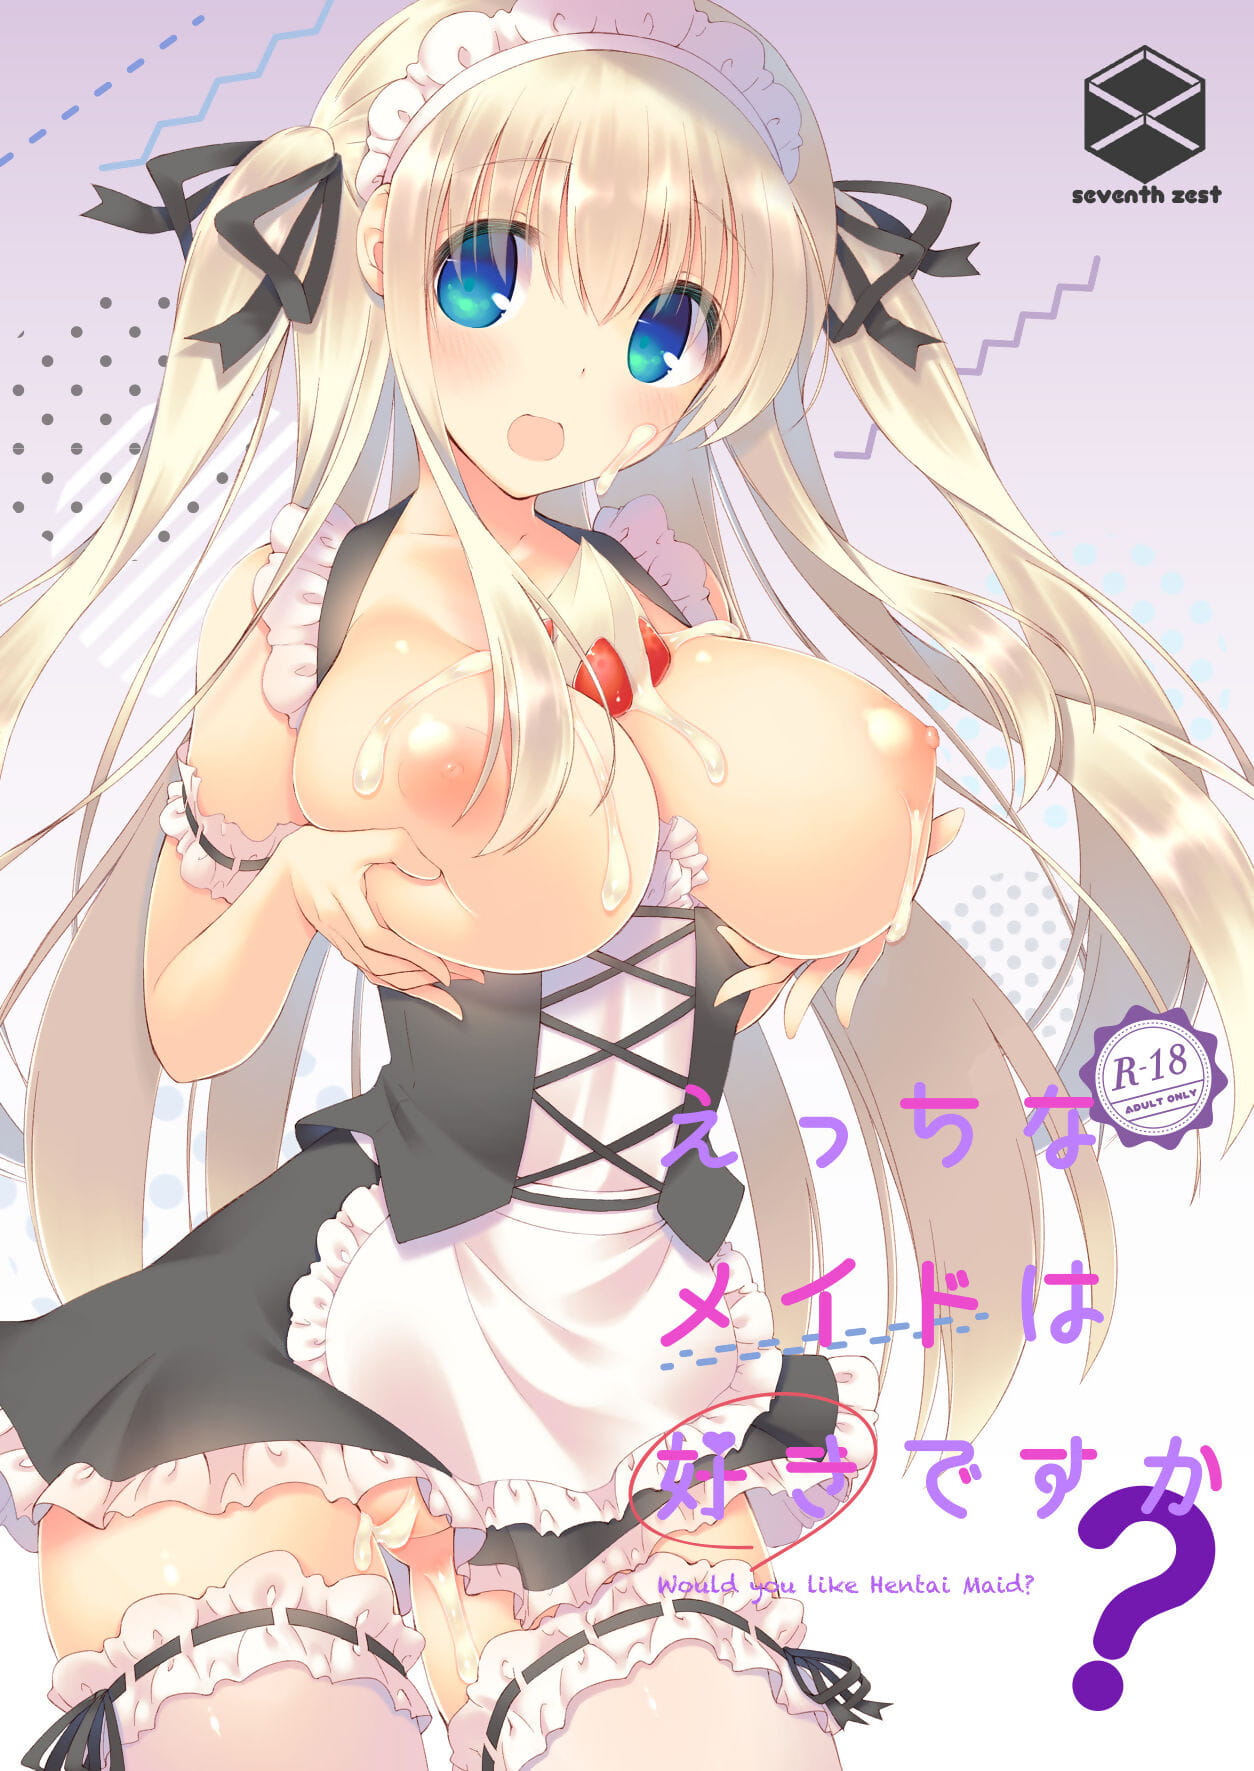 Ecchi na meid wa suki desu ka? zou u als Hentai maid? page 1